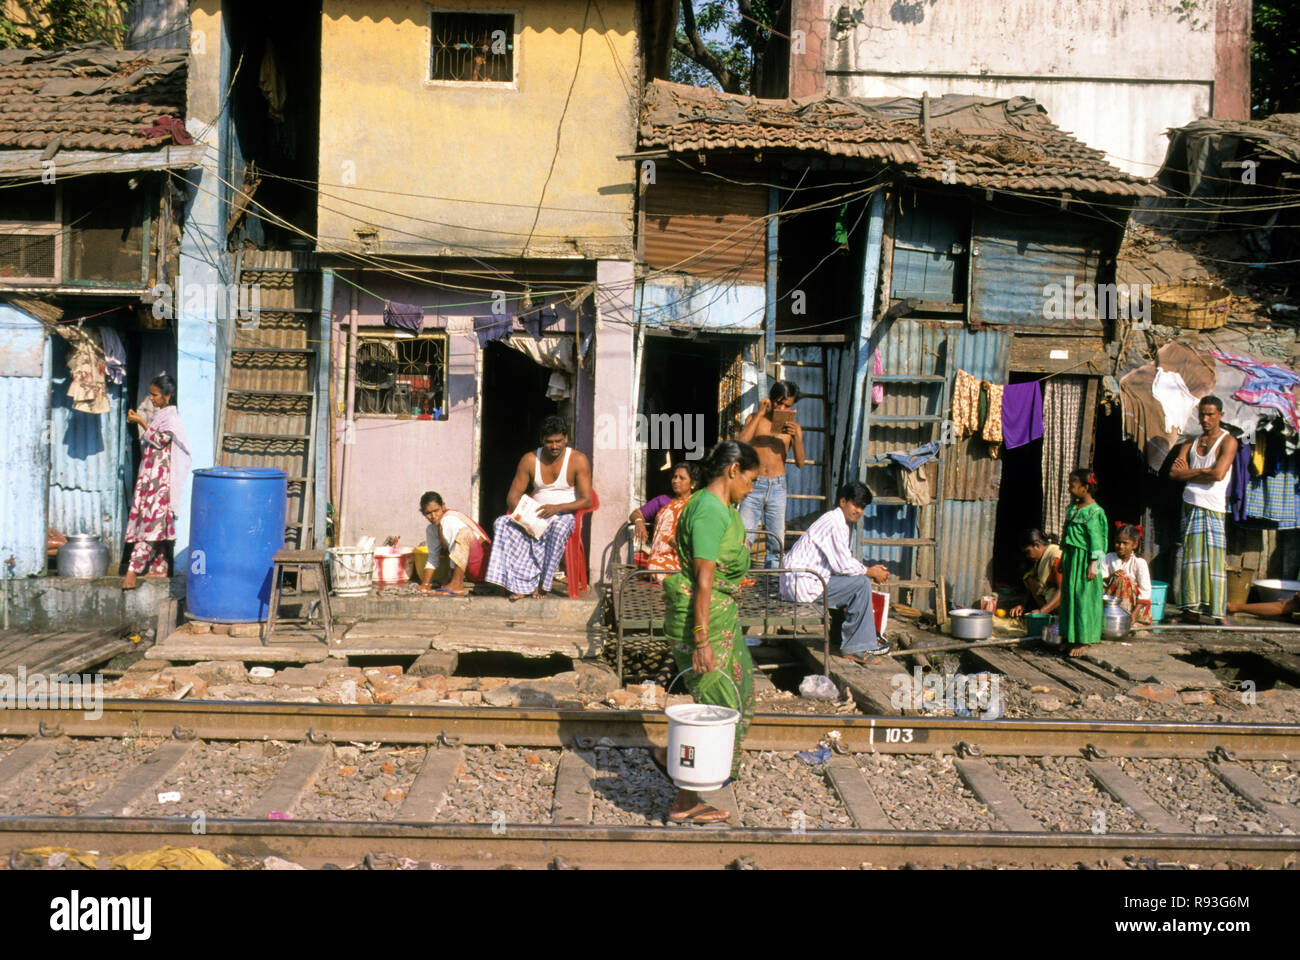 Baraccopoli vicino al binario ferroviario, Harbor Line, Mumbai Bombay, Maharashtra, India Foto Stock